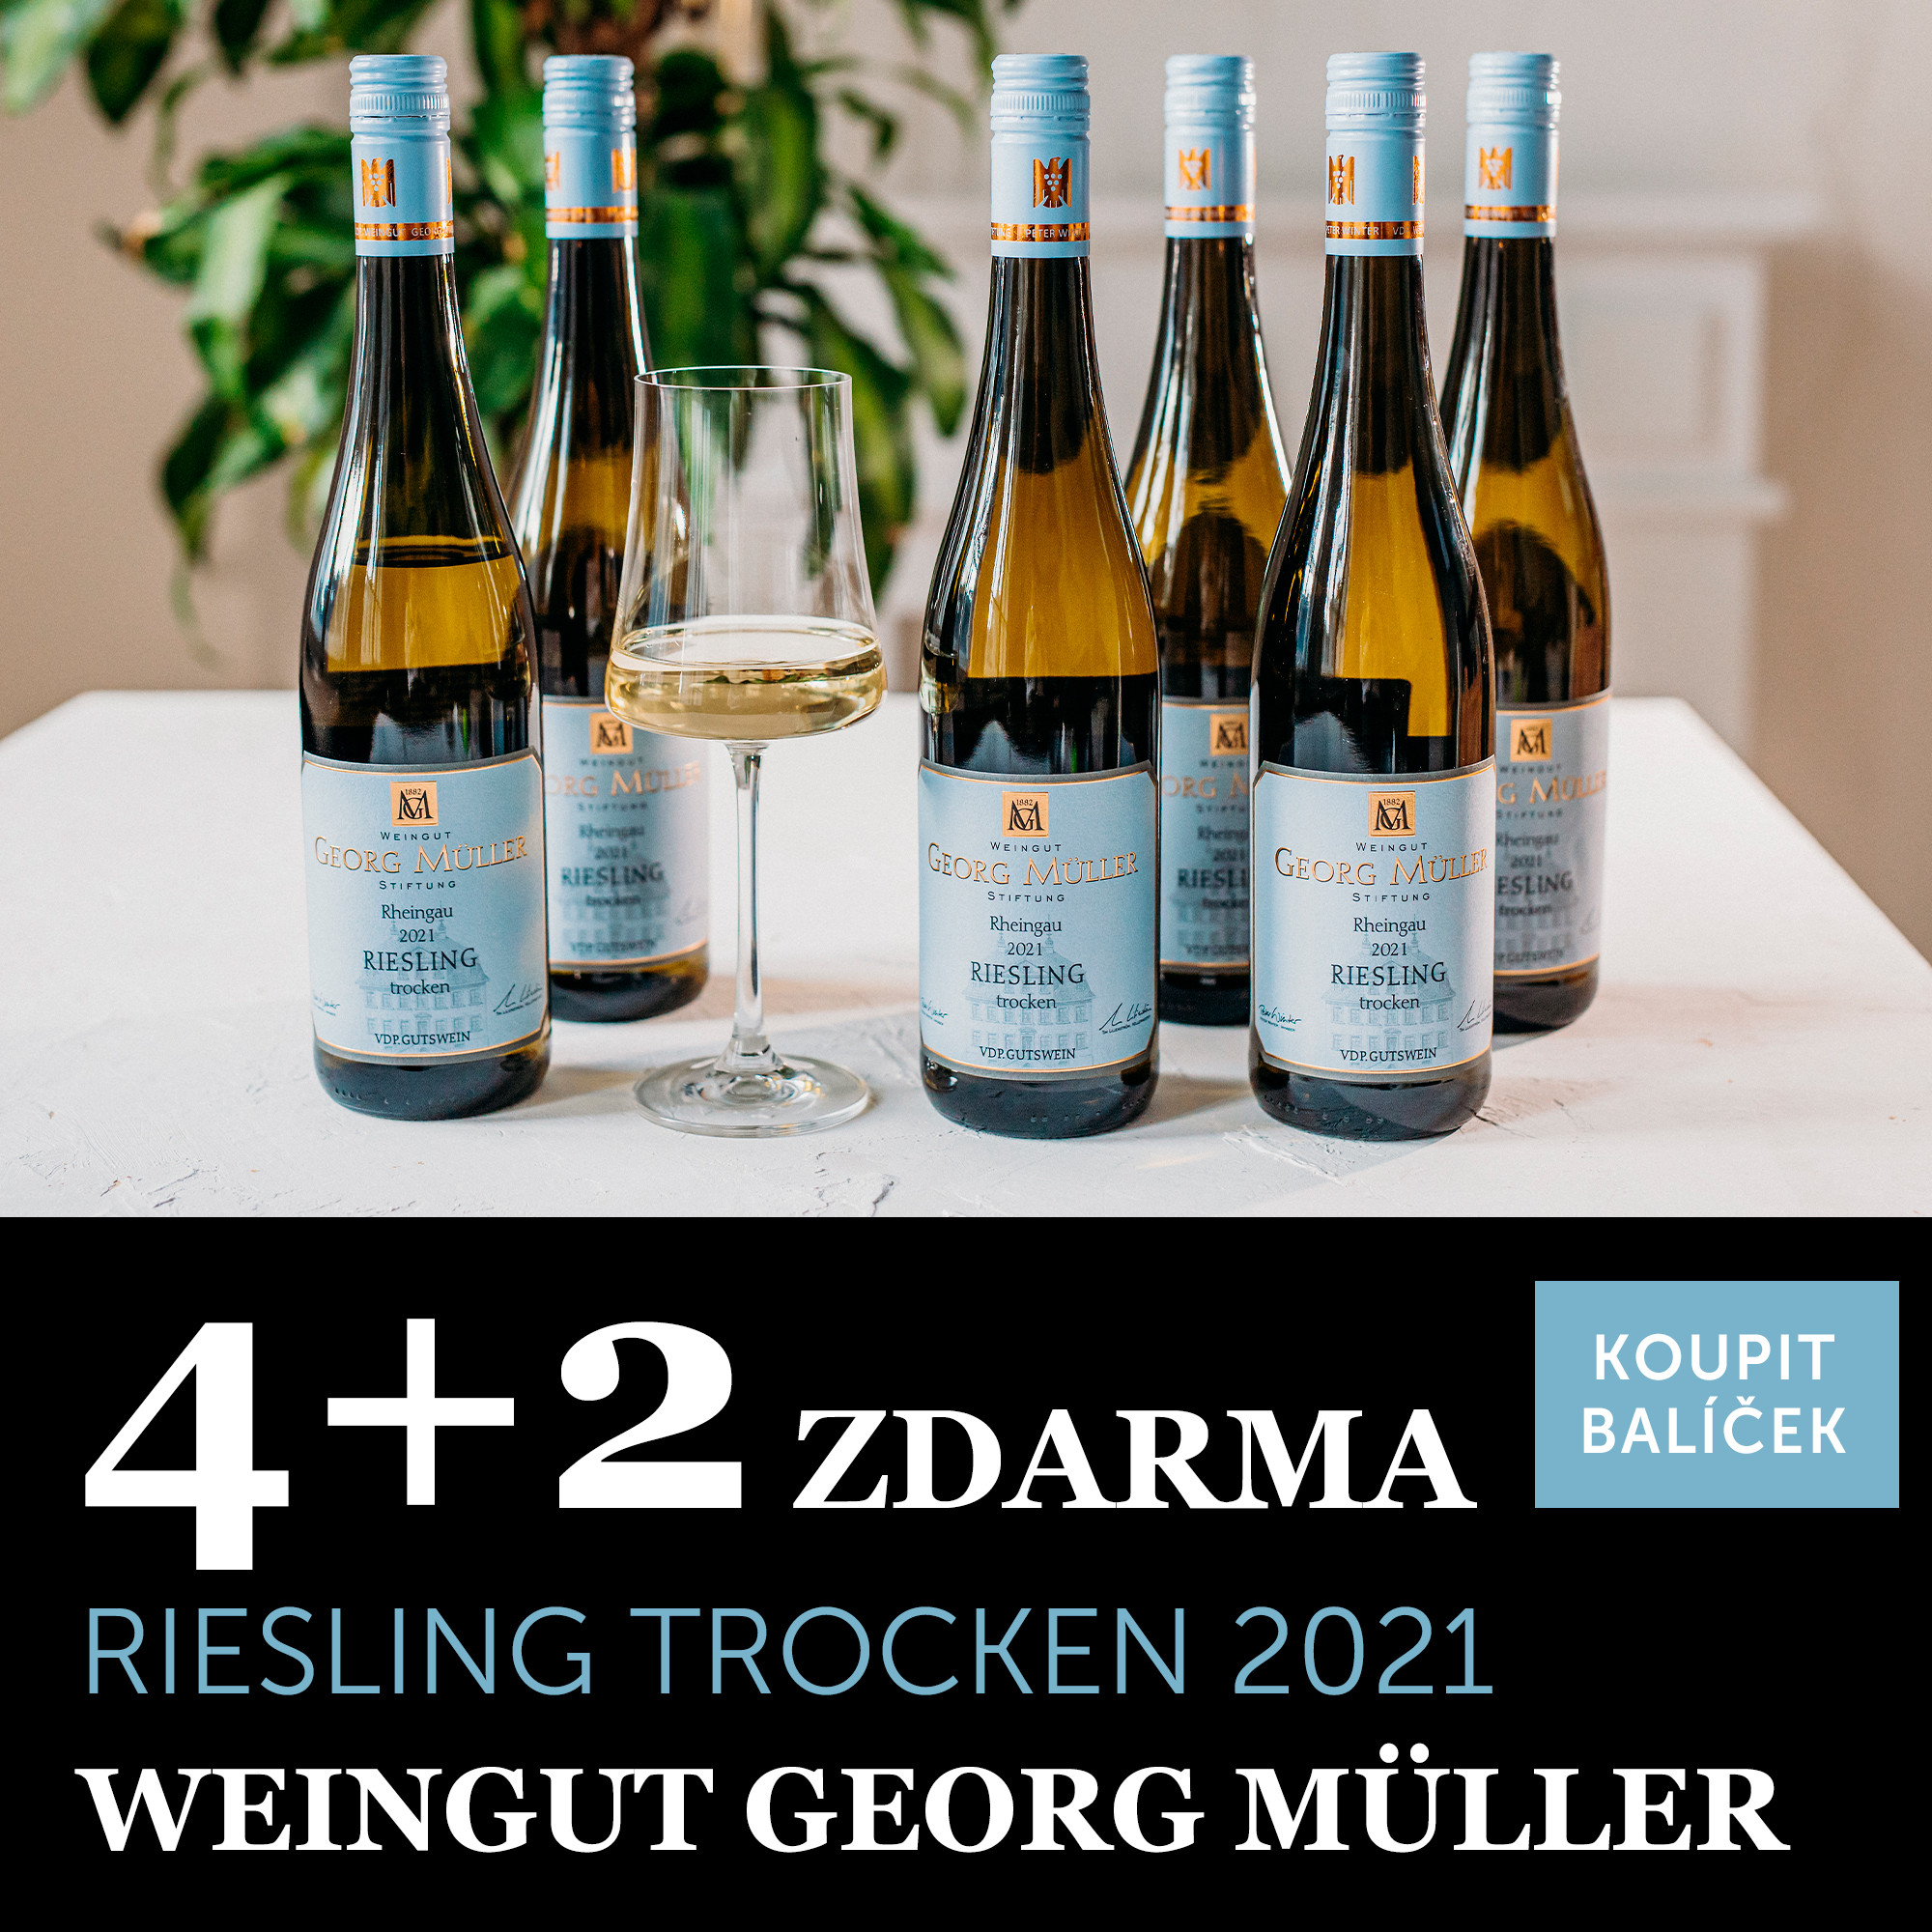 Georg Müller Riesling Gutswein trocken 2021 4+2 zdarma - UKONČENO